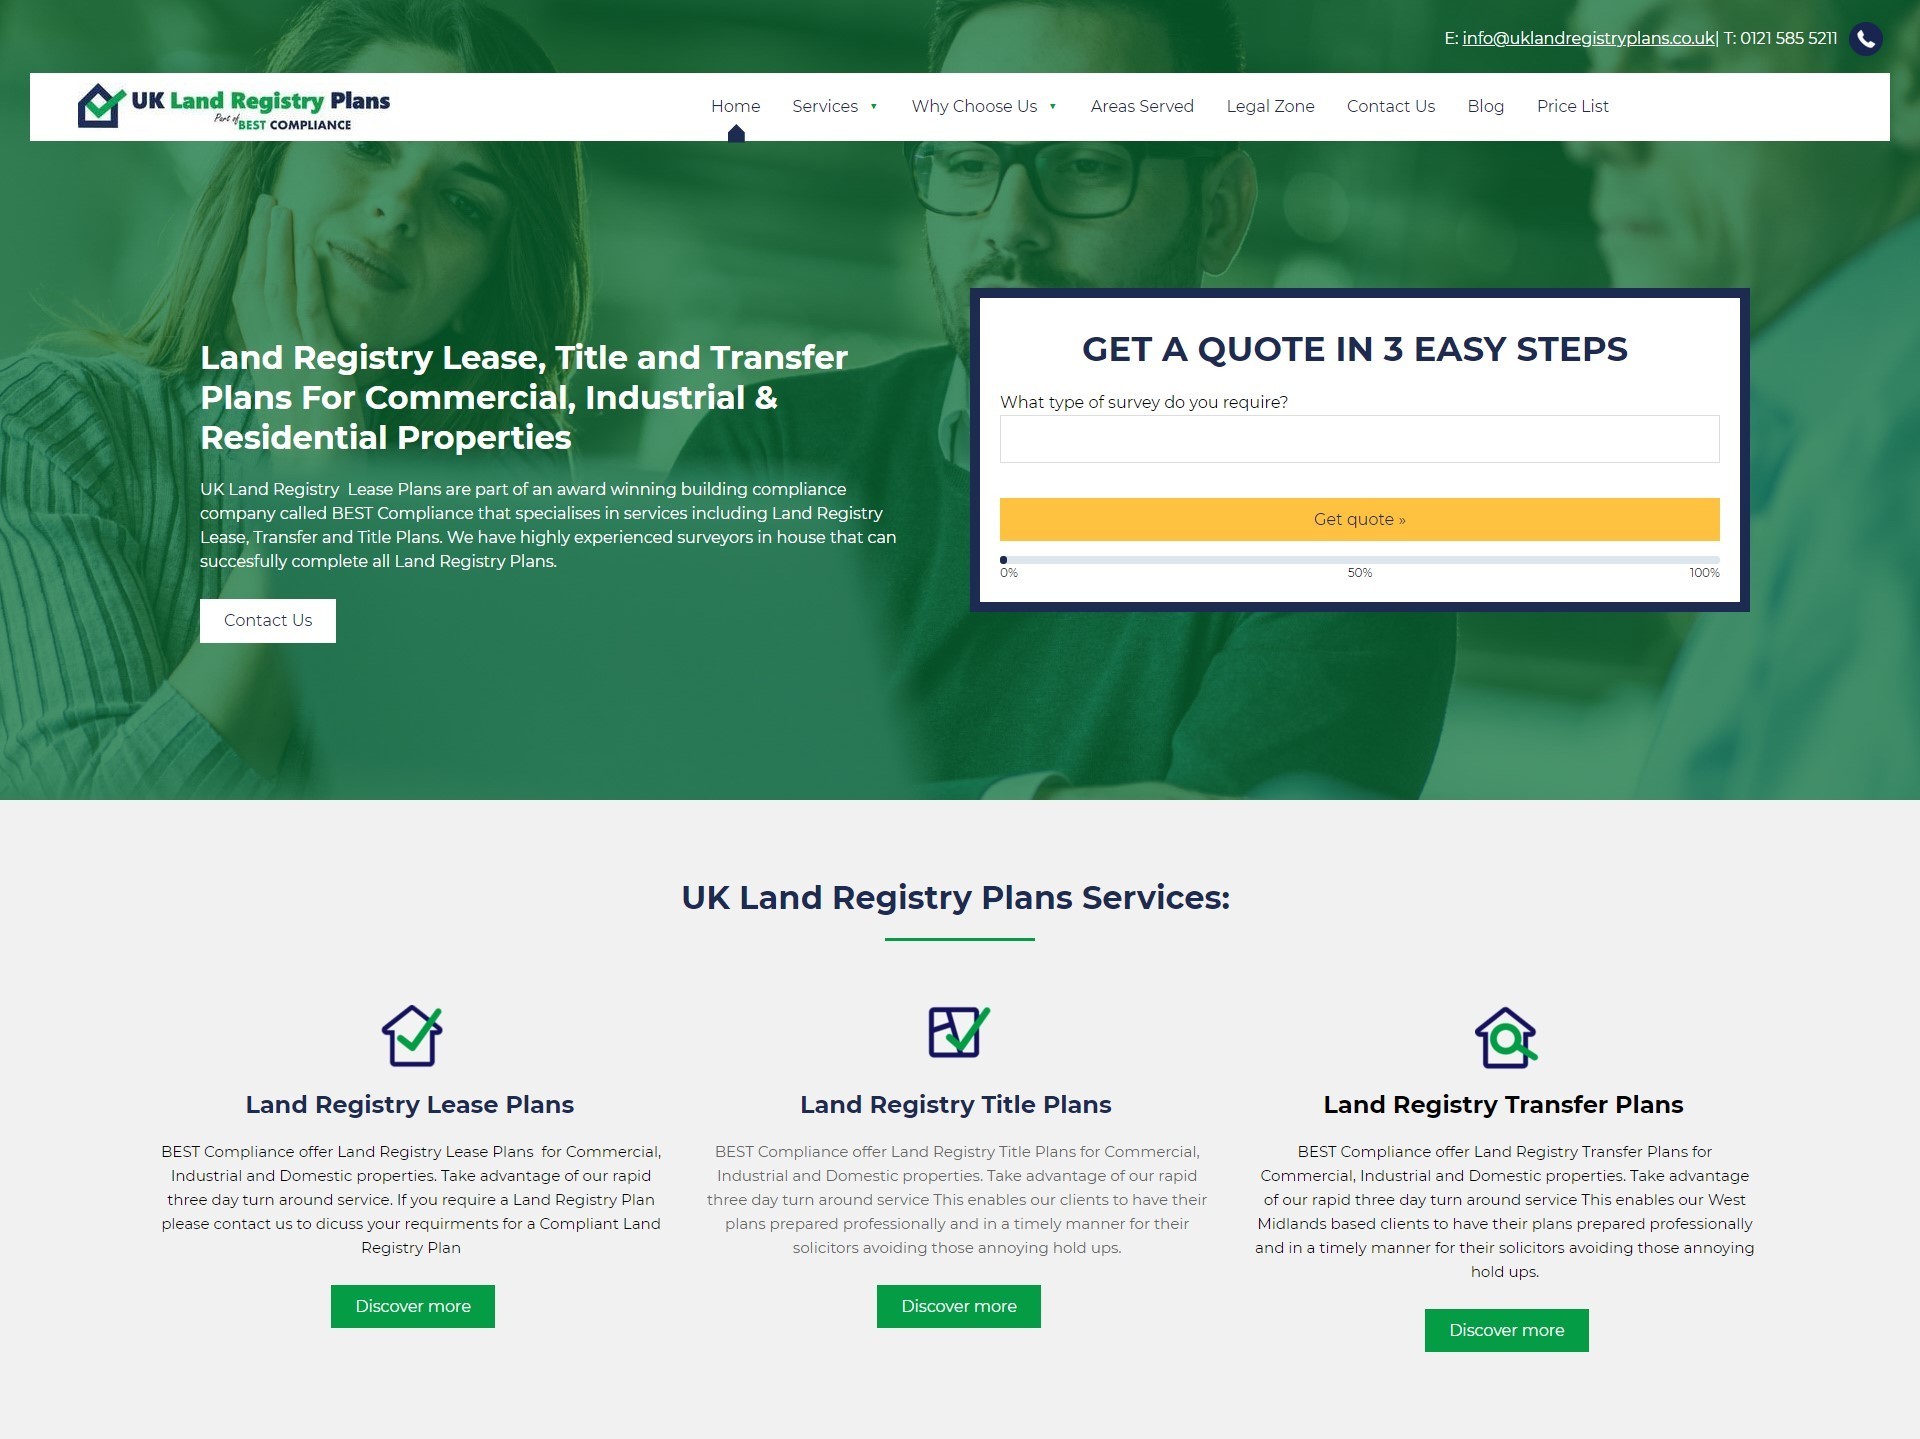 UK Land Registry Plans website